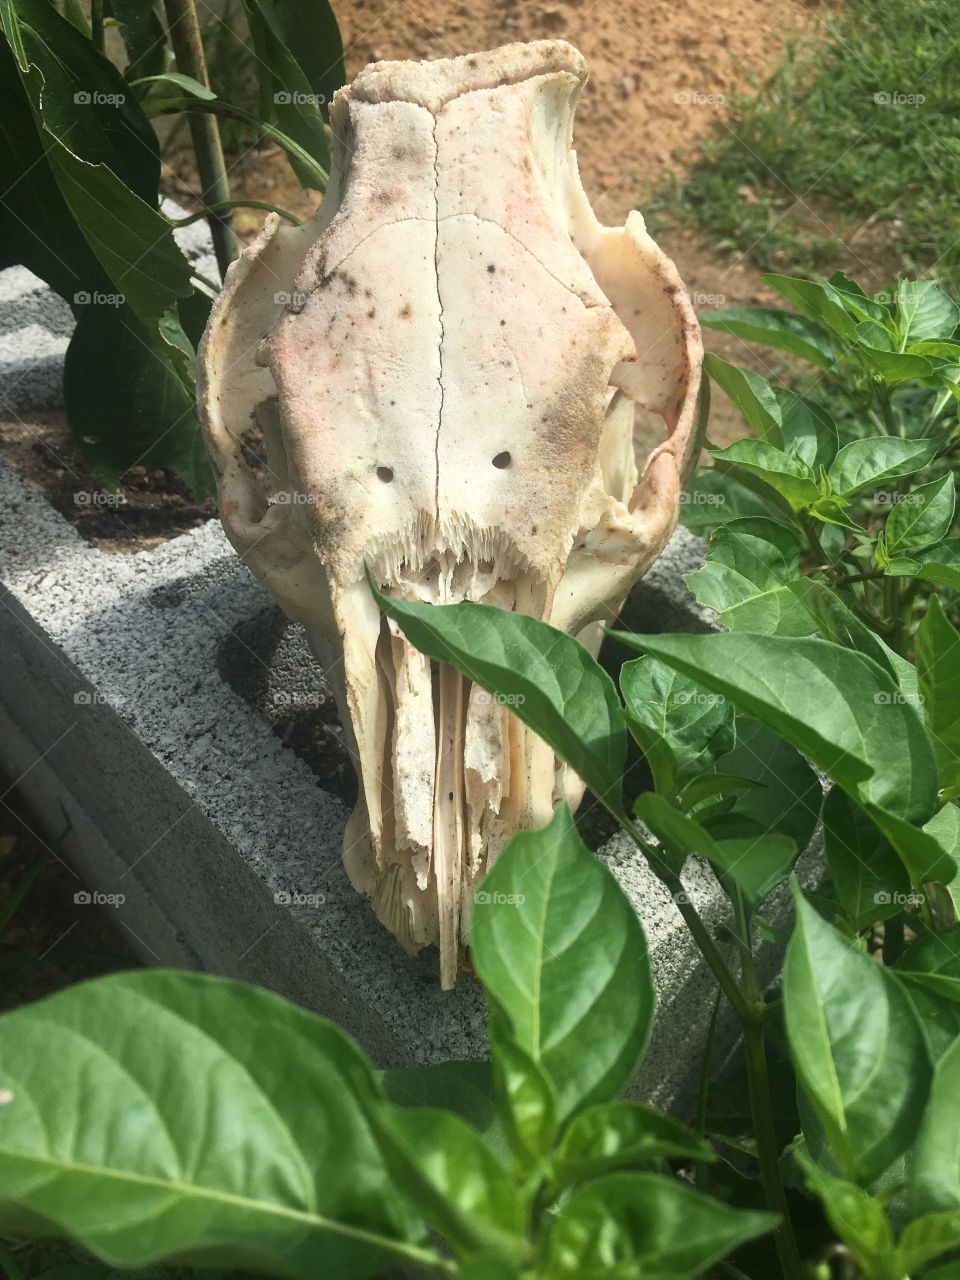 Pig skull in garden 